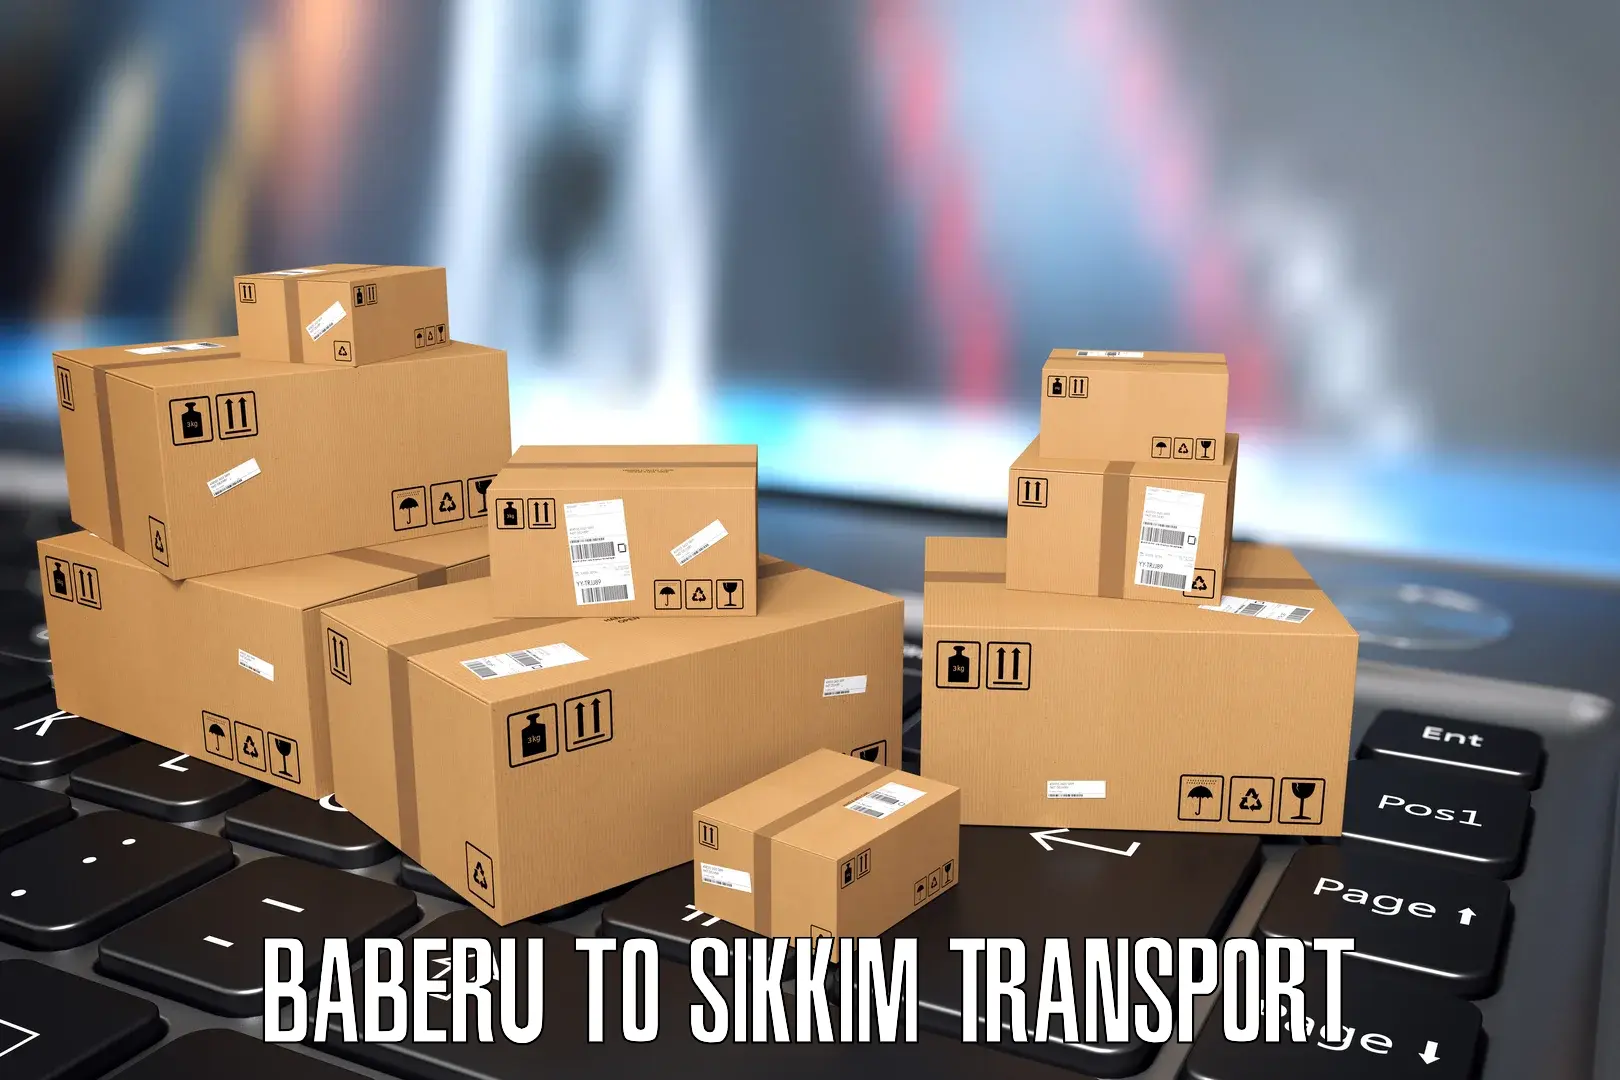 Road transport online services Baberu to North Sikkim